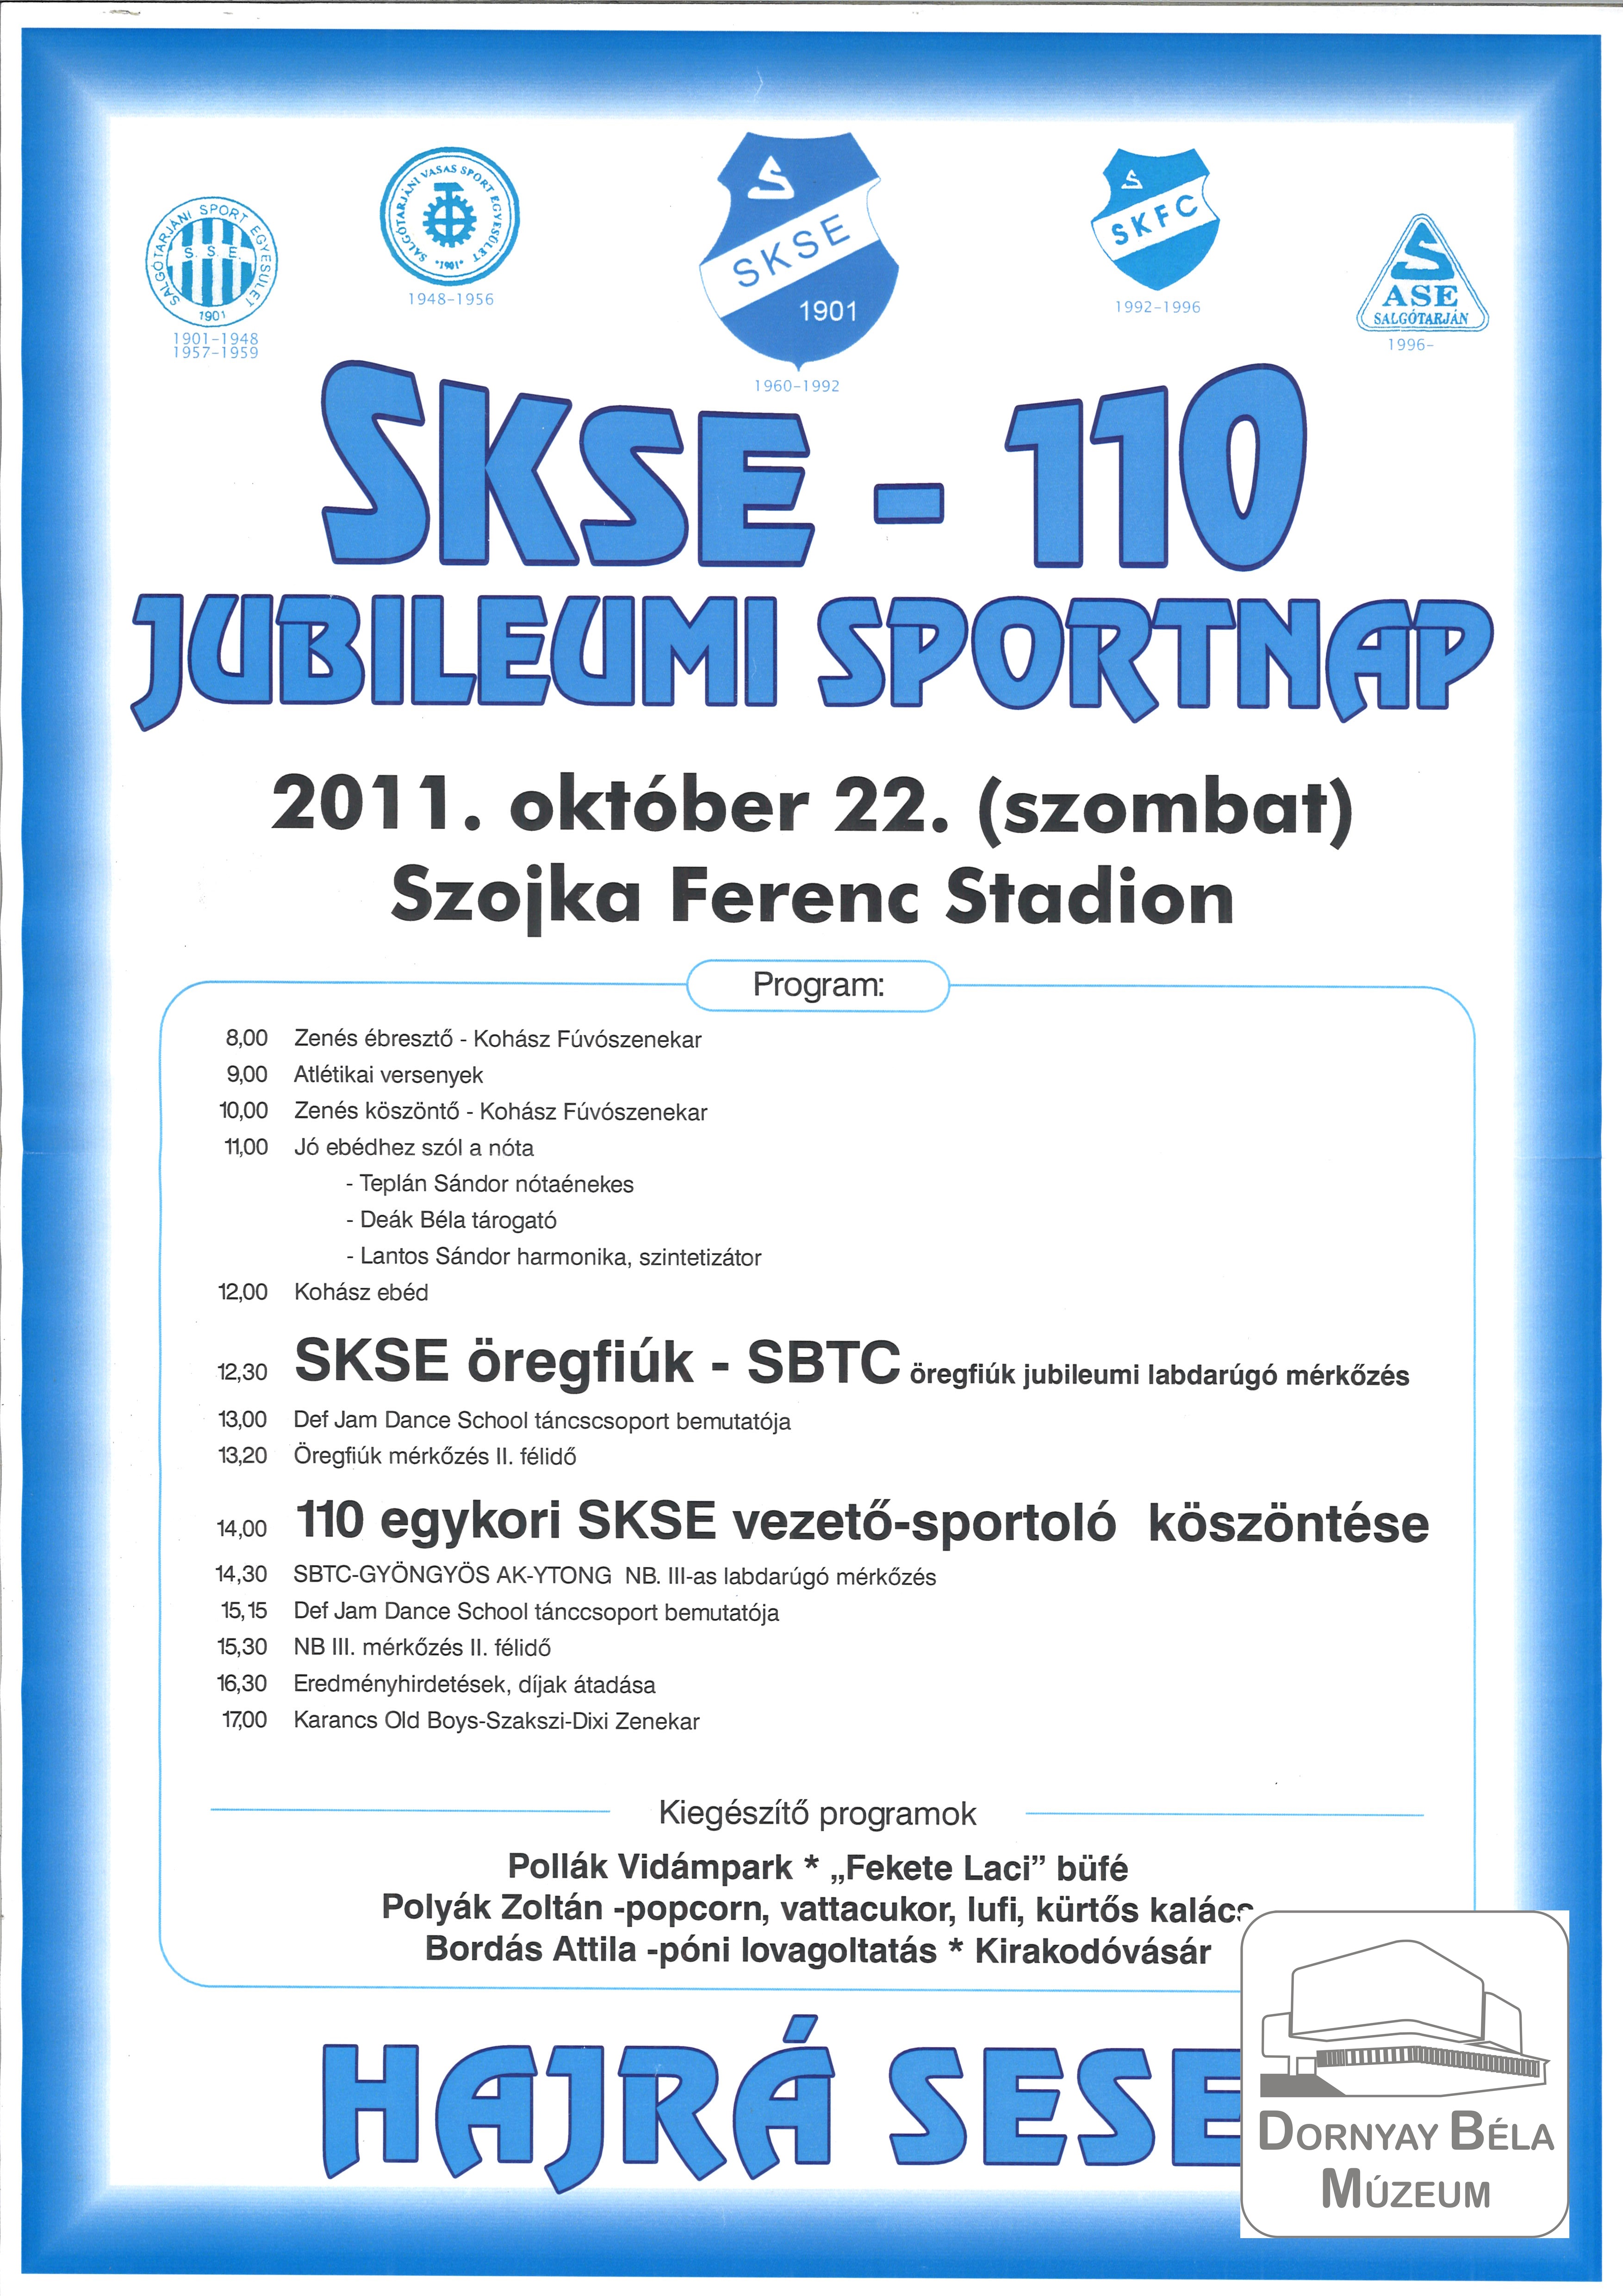 S.K.S.E. 110 Sportnap (Dornyay Béla Múzeum, Salgótarján CC BY-NC-SA)